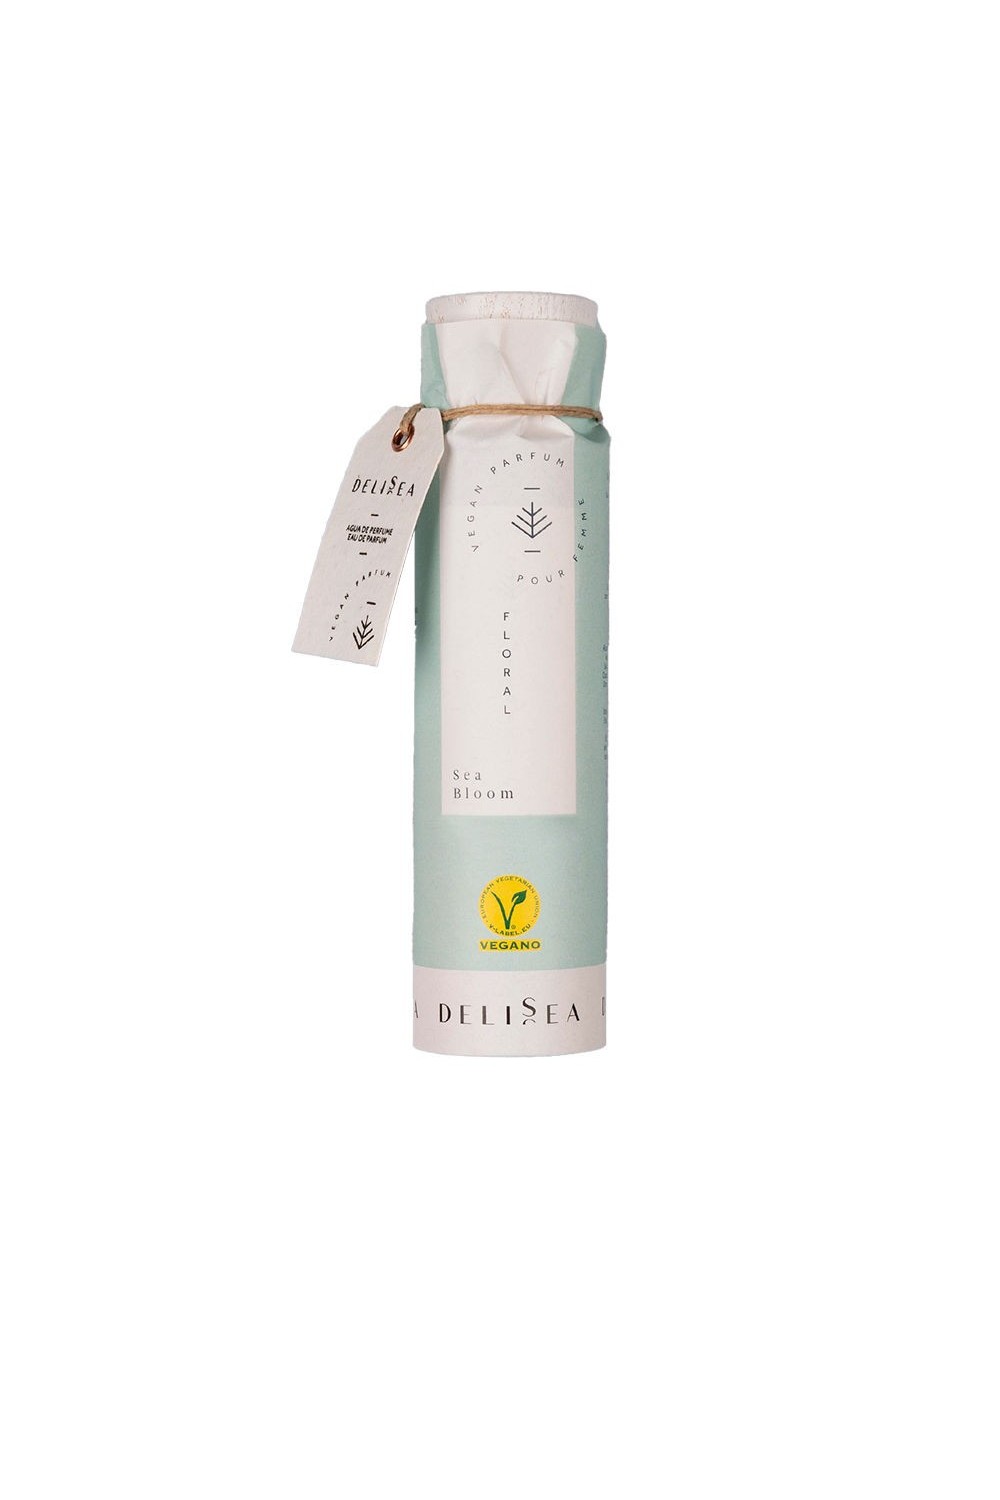 Delisea Sea Bloom Vegan Eau Parfum Pour Femme 150ml